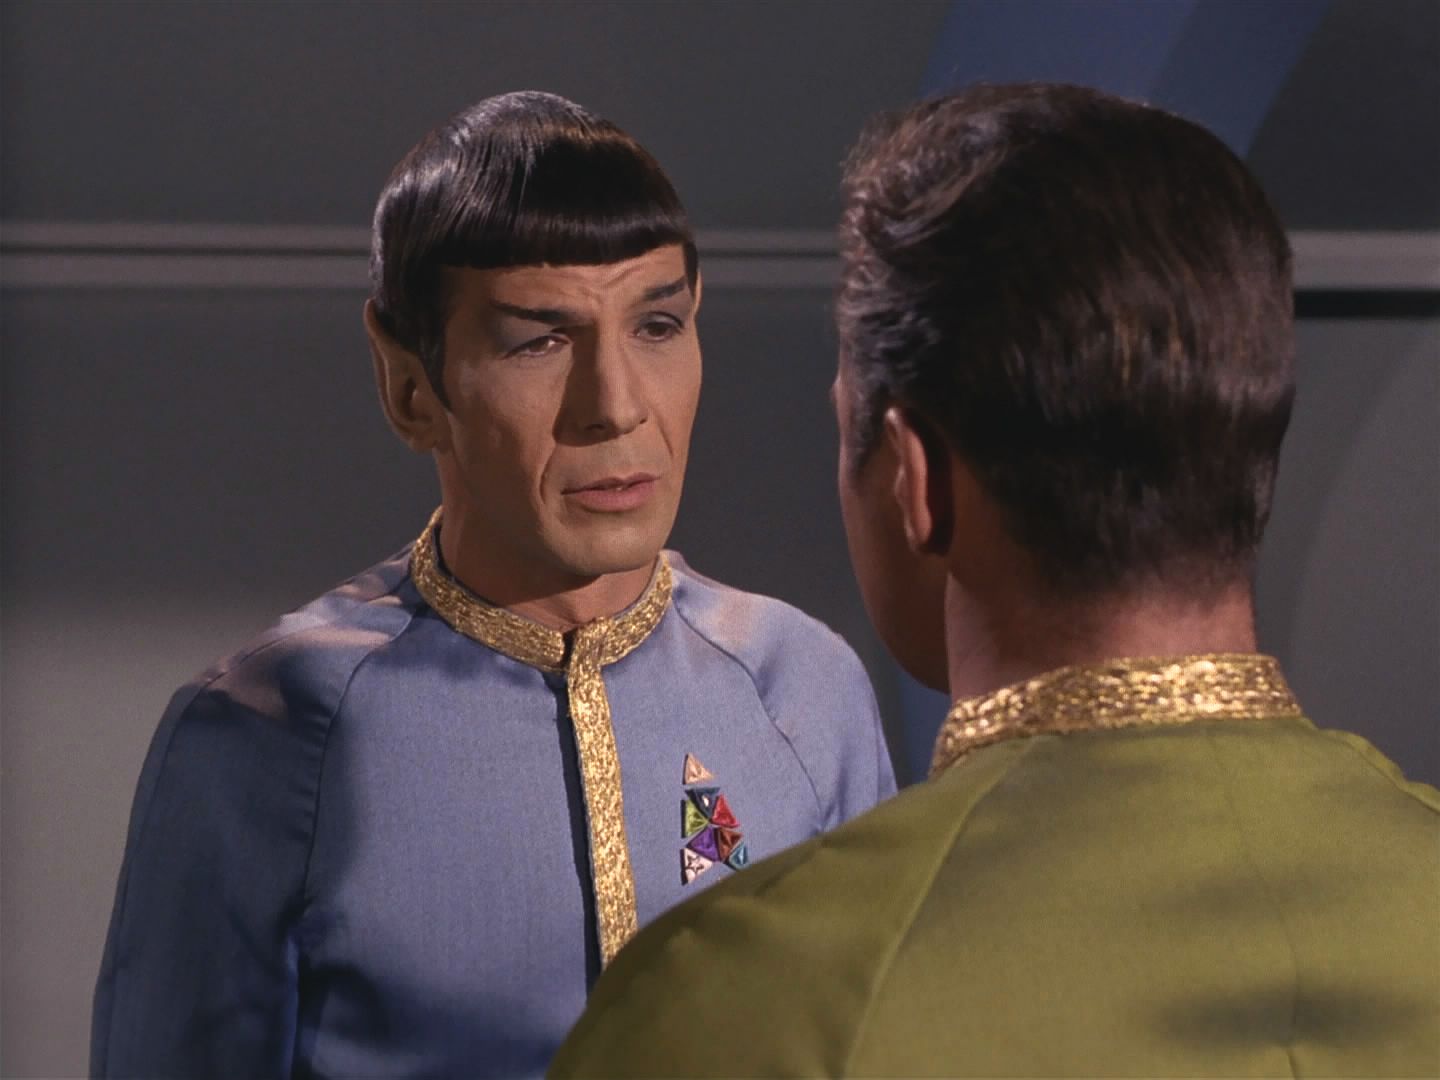 Ze základny 11 přišla zpráva, že kvůli zásluhám kapitána Pikea učinili výjimku a Spock nebude stíhán. Vysvětluje Kirkovi, že mu nemohl nic říct, stačilo, když riskoval sám.